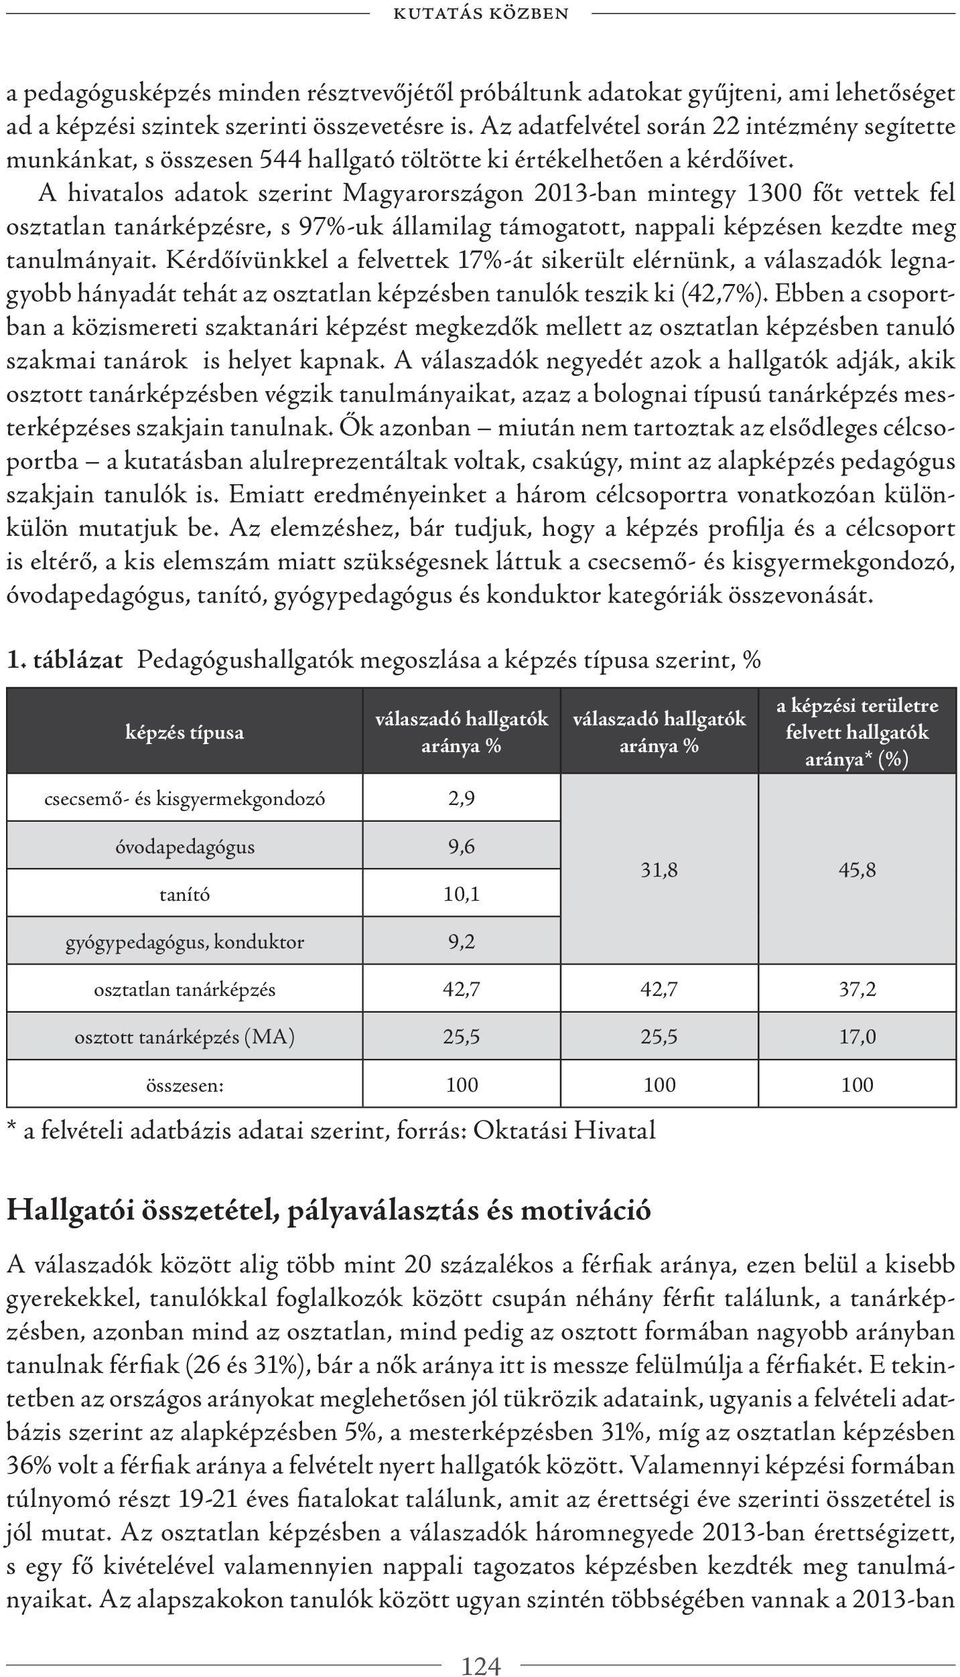 A hivatalos adatok szerint Magyarországon 2013-ban mintegy 1300 főt vettek fel osztatlan tanárképzésre, s 97%-uk államilag támogatott, nappali képzésen kezdte meg tanulmányait.